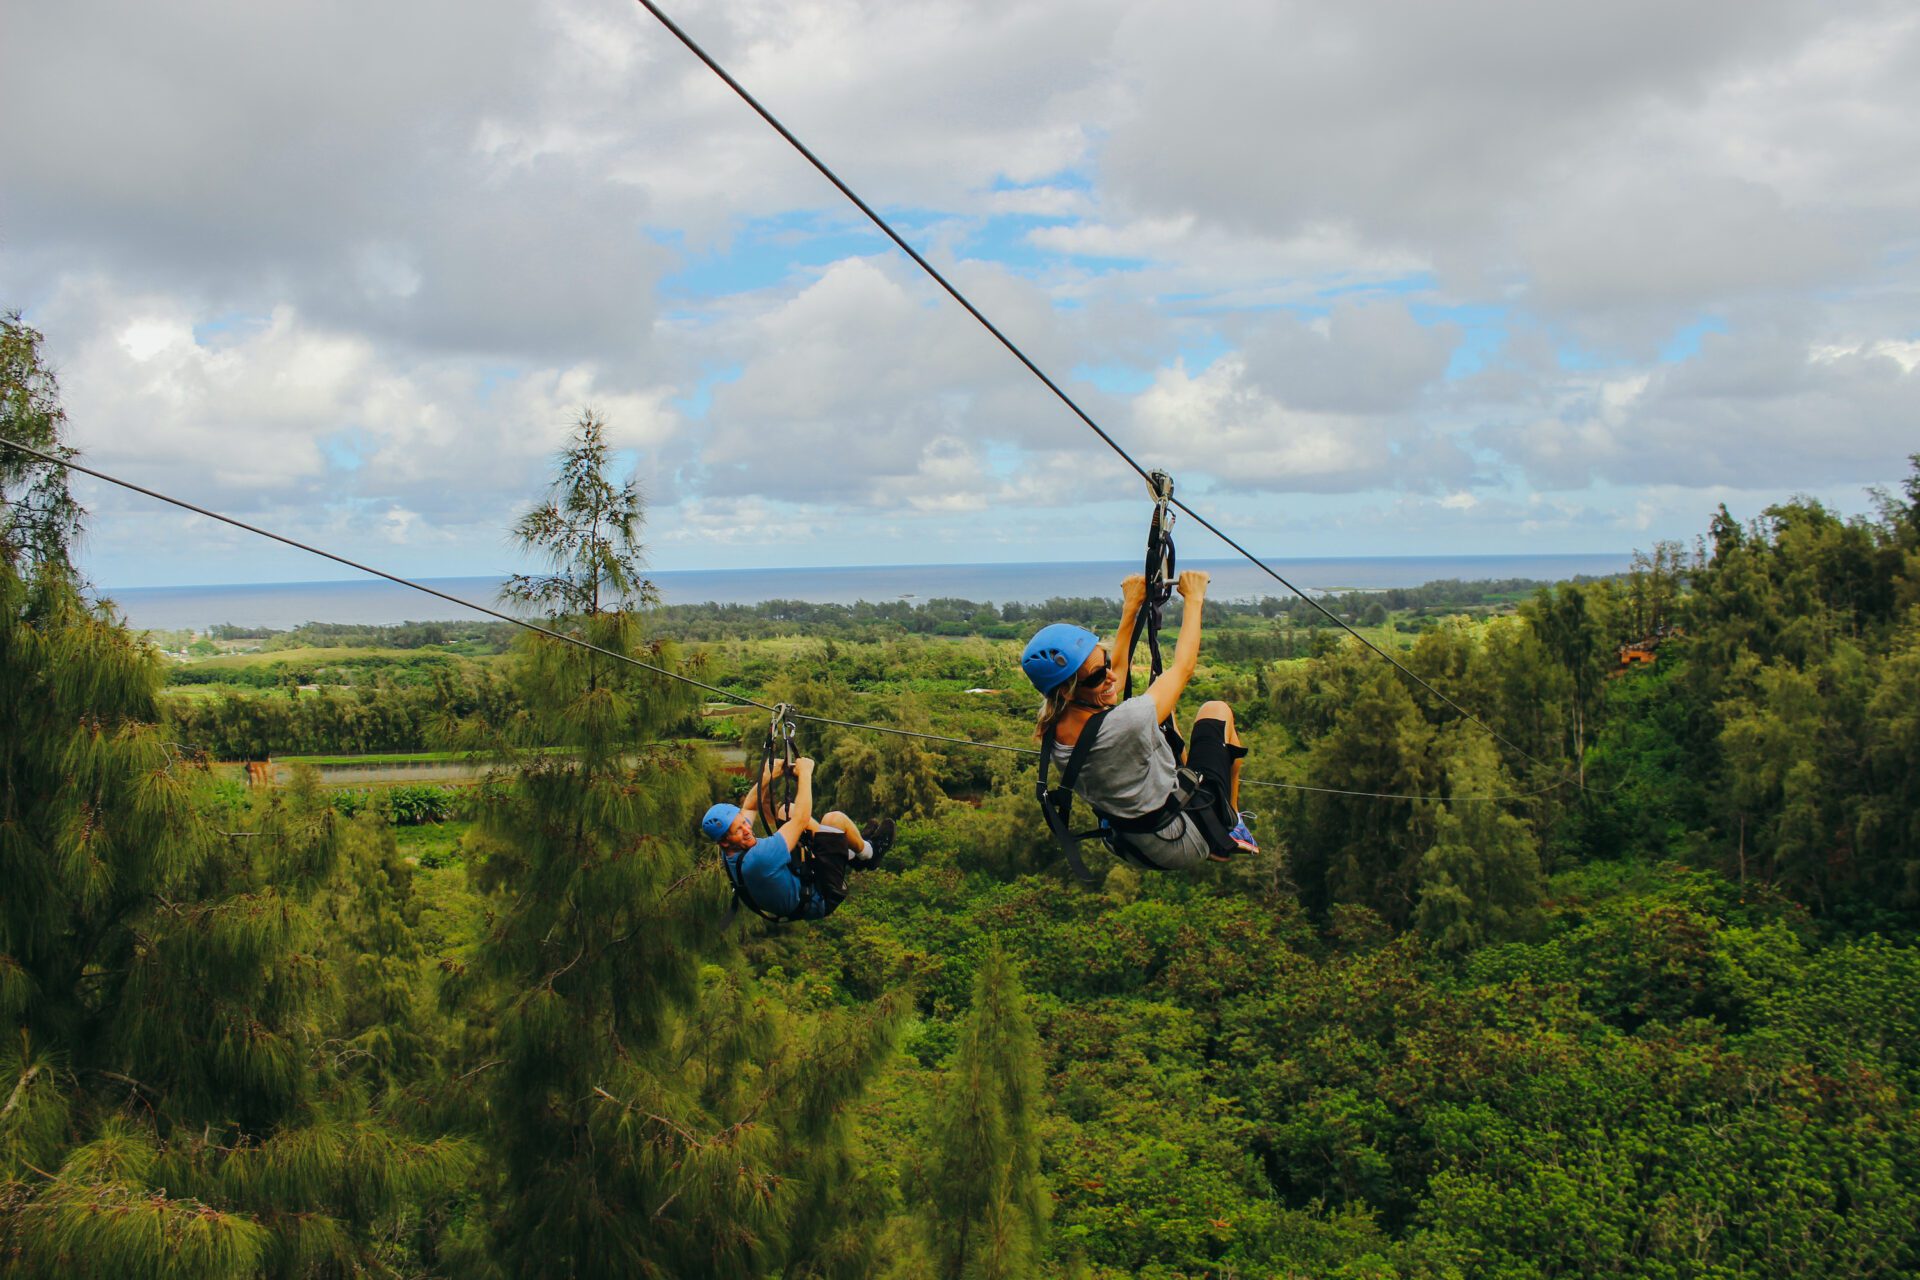 A happy couple taking an Oahu zipline adventure.